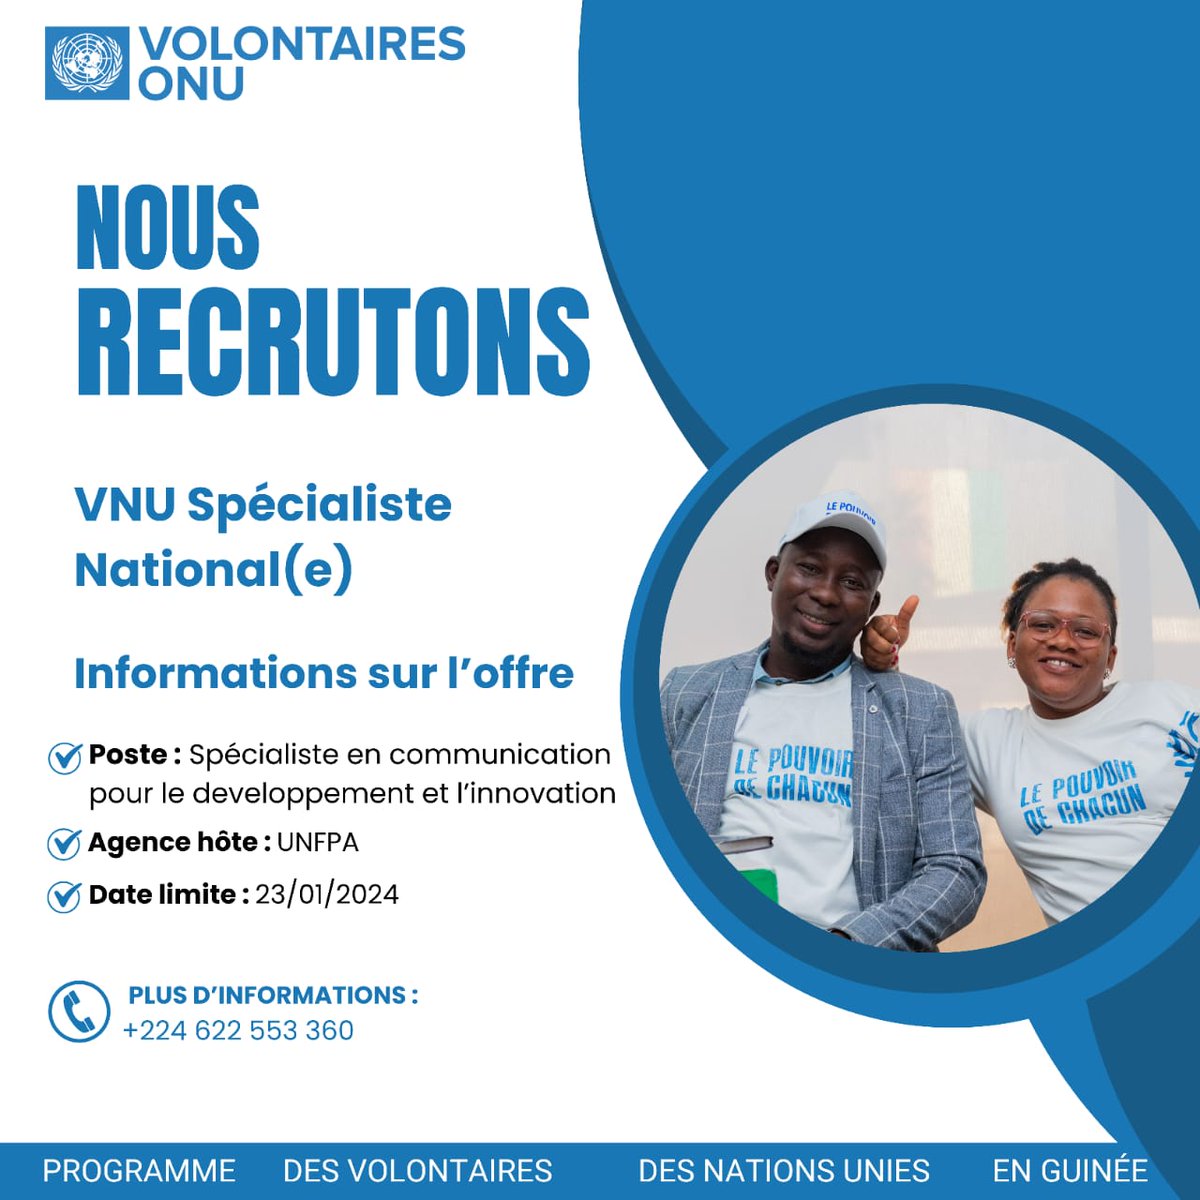 📢 Opportunité de volontariat national en communication pour le développement et l'innovation UNFPA Guinée à Conakry. Si vous êtes passionné(e) par la communication et souhaitez contribuer au progrès, postulez👇 app.unv.org/opportunities/… avant le 23/01/2024.